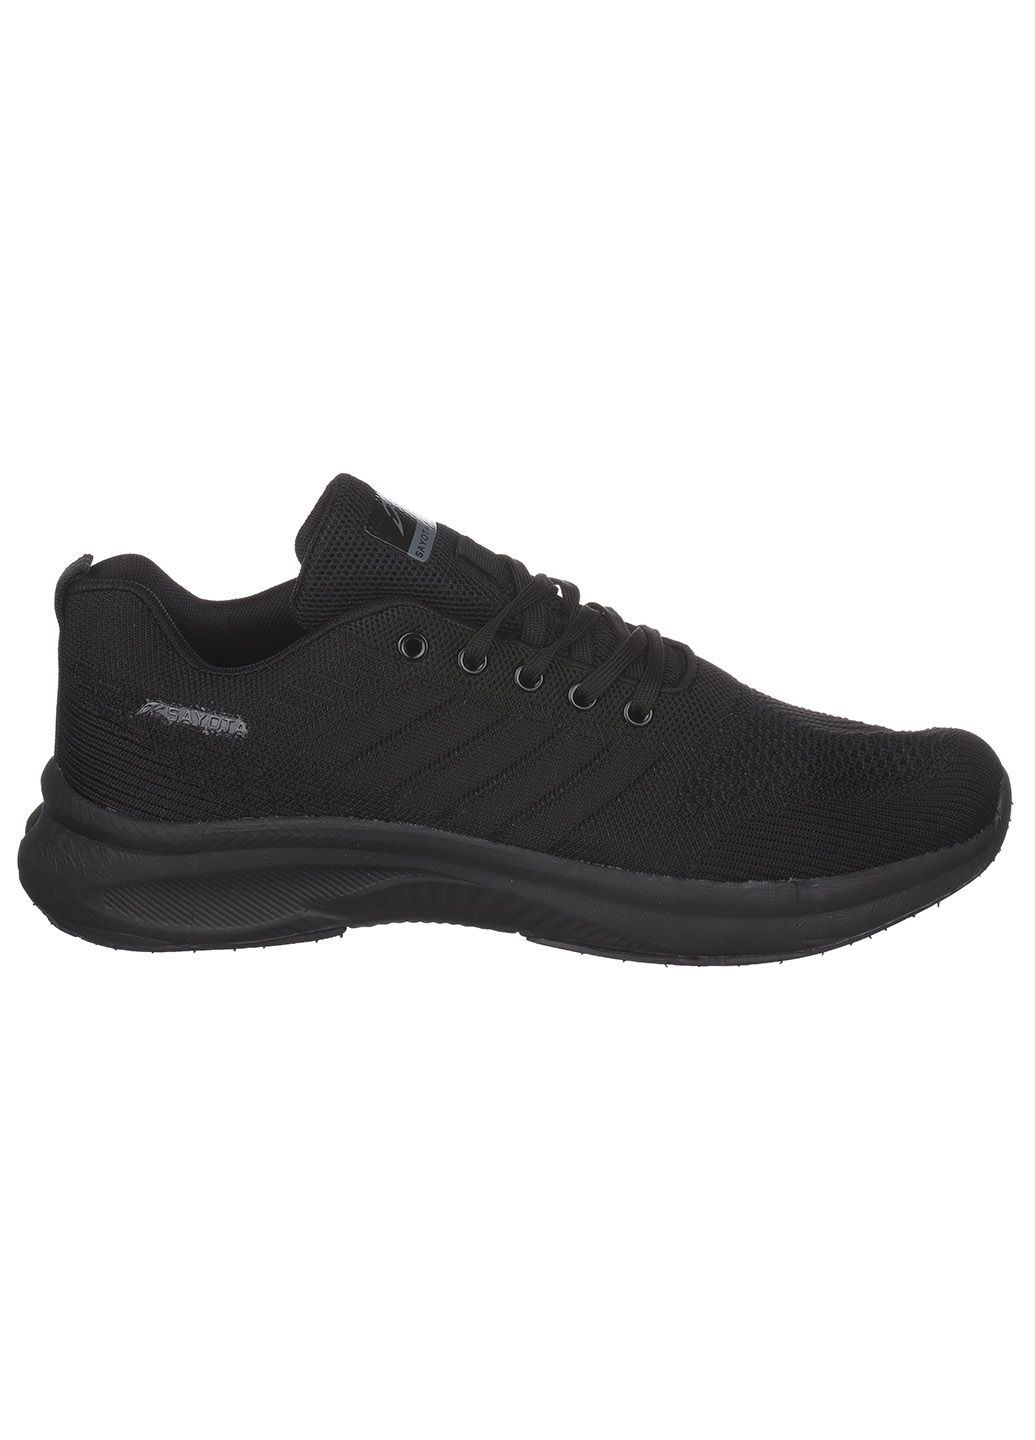 Черные демисезонные мужские кроссовки s620-1 Sayota